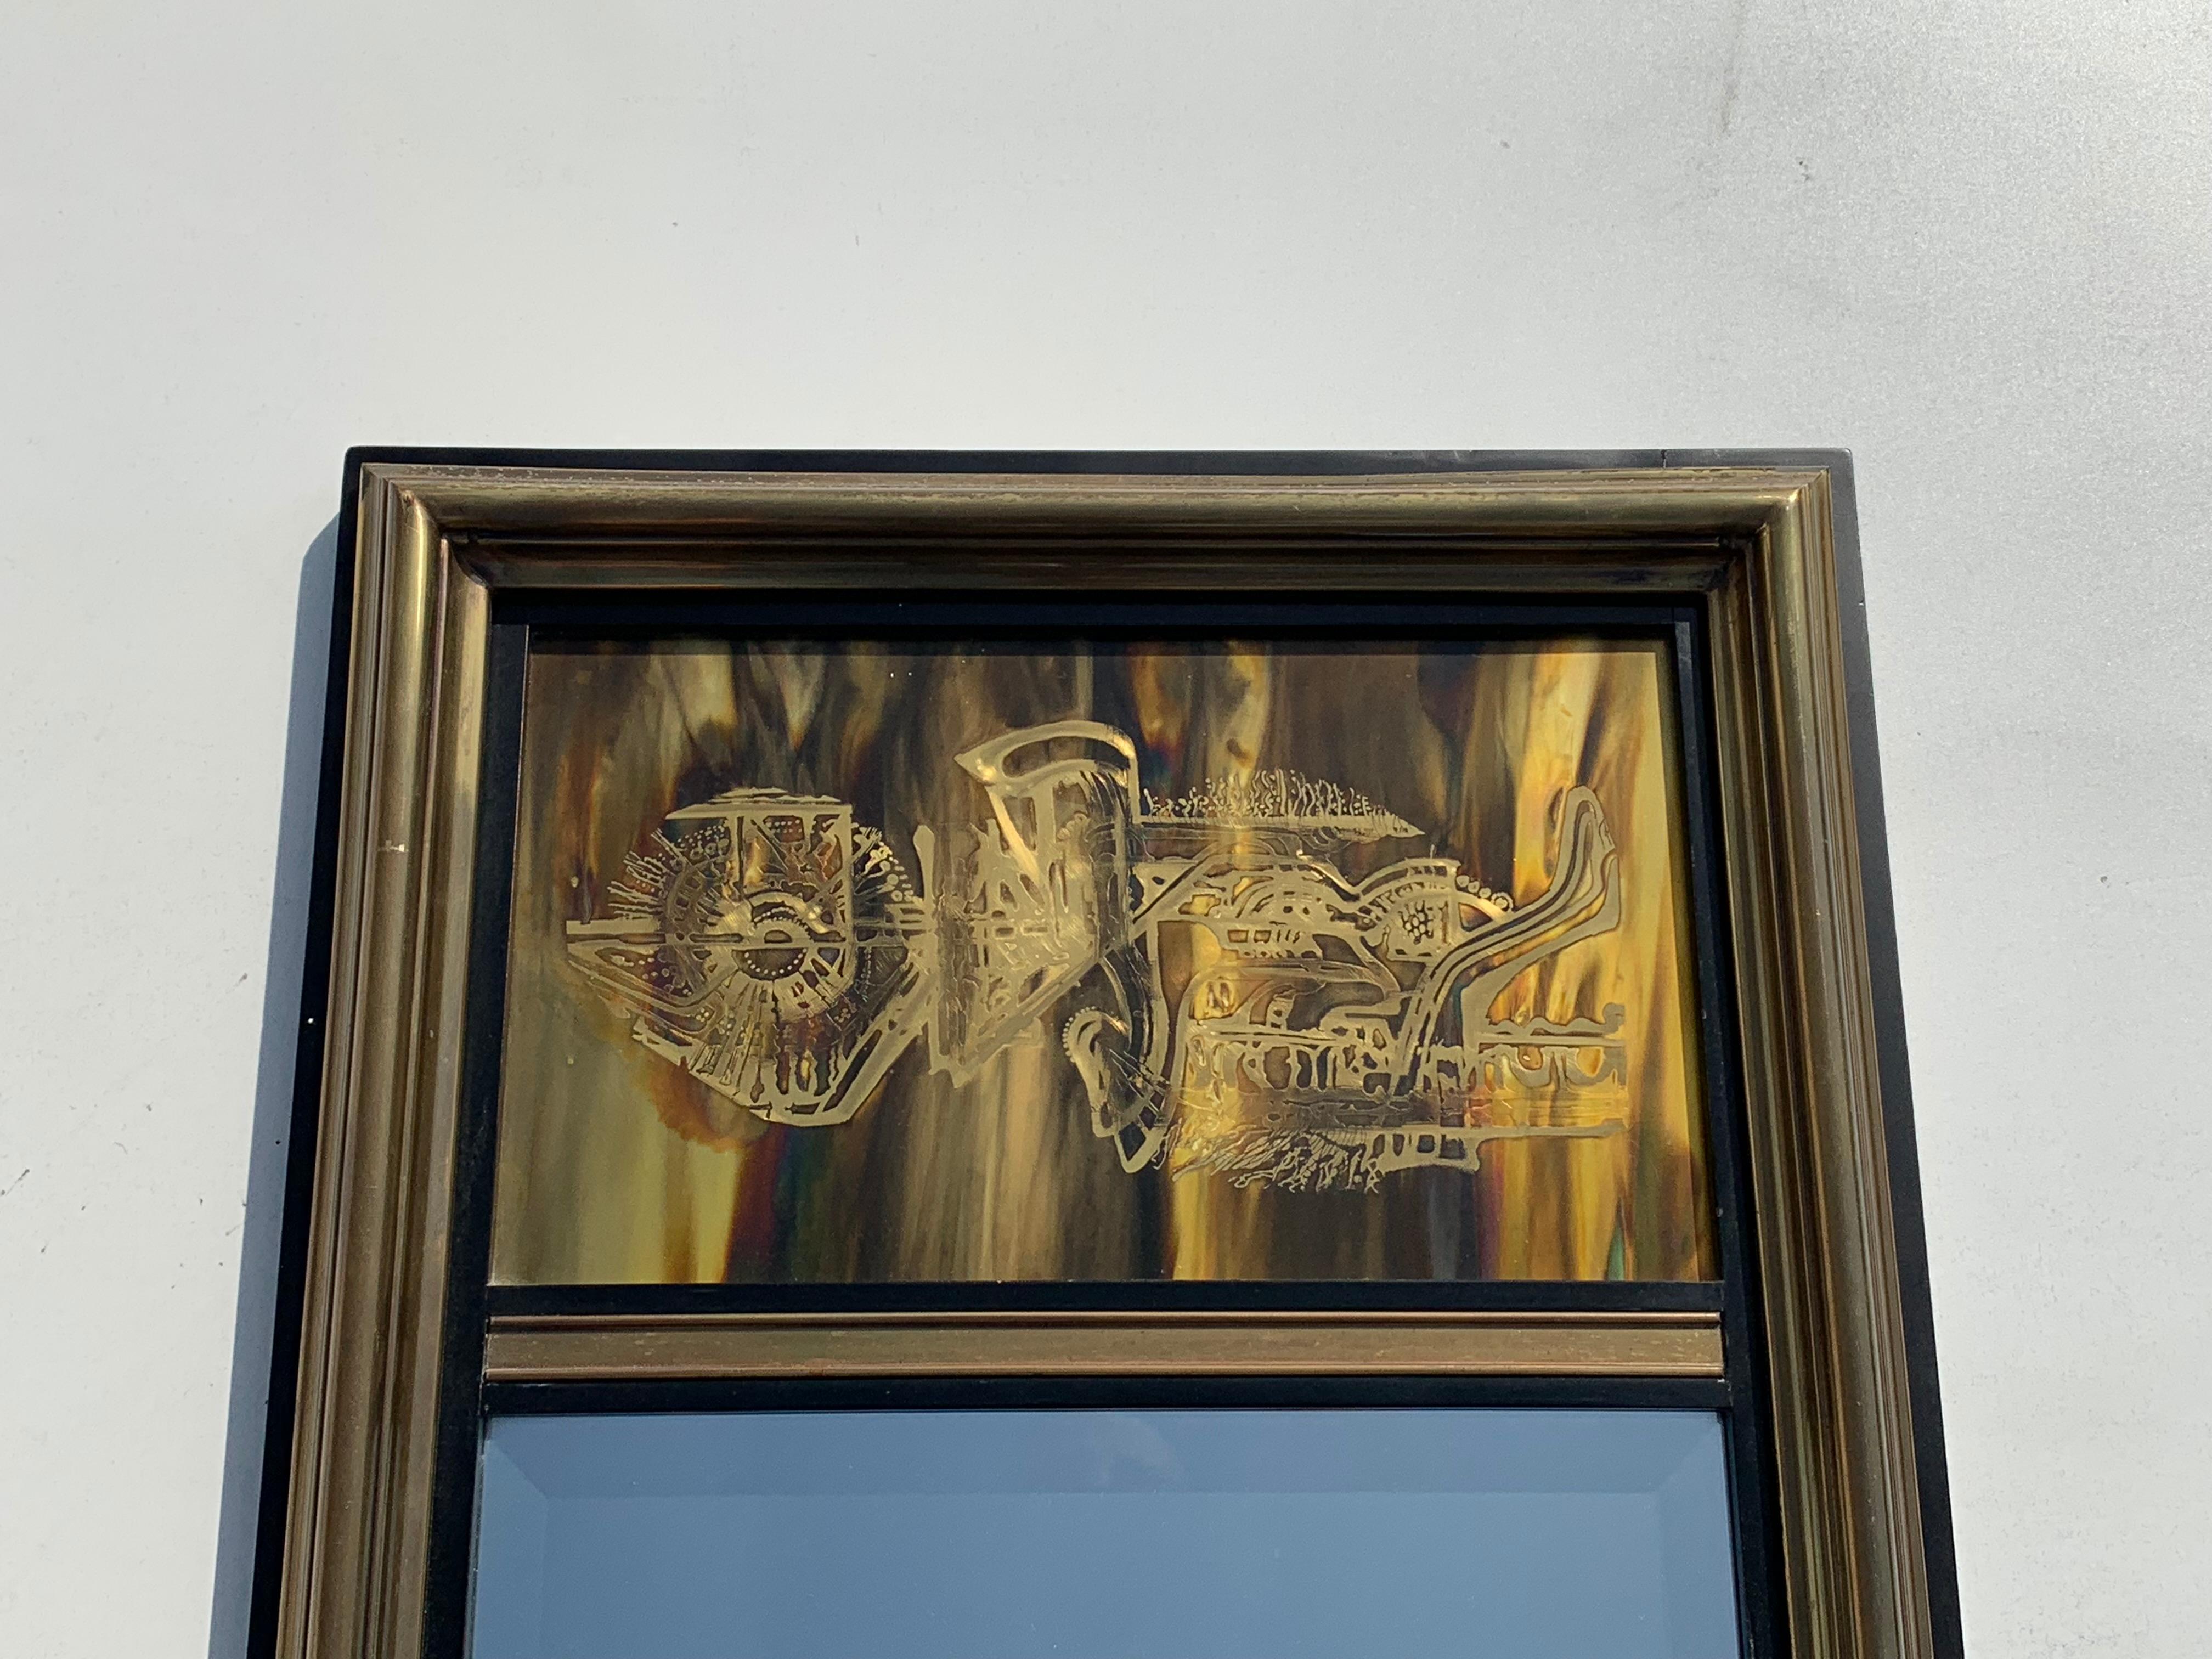 Bernhard Rohne etched brass mirror for Mastercraft.